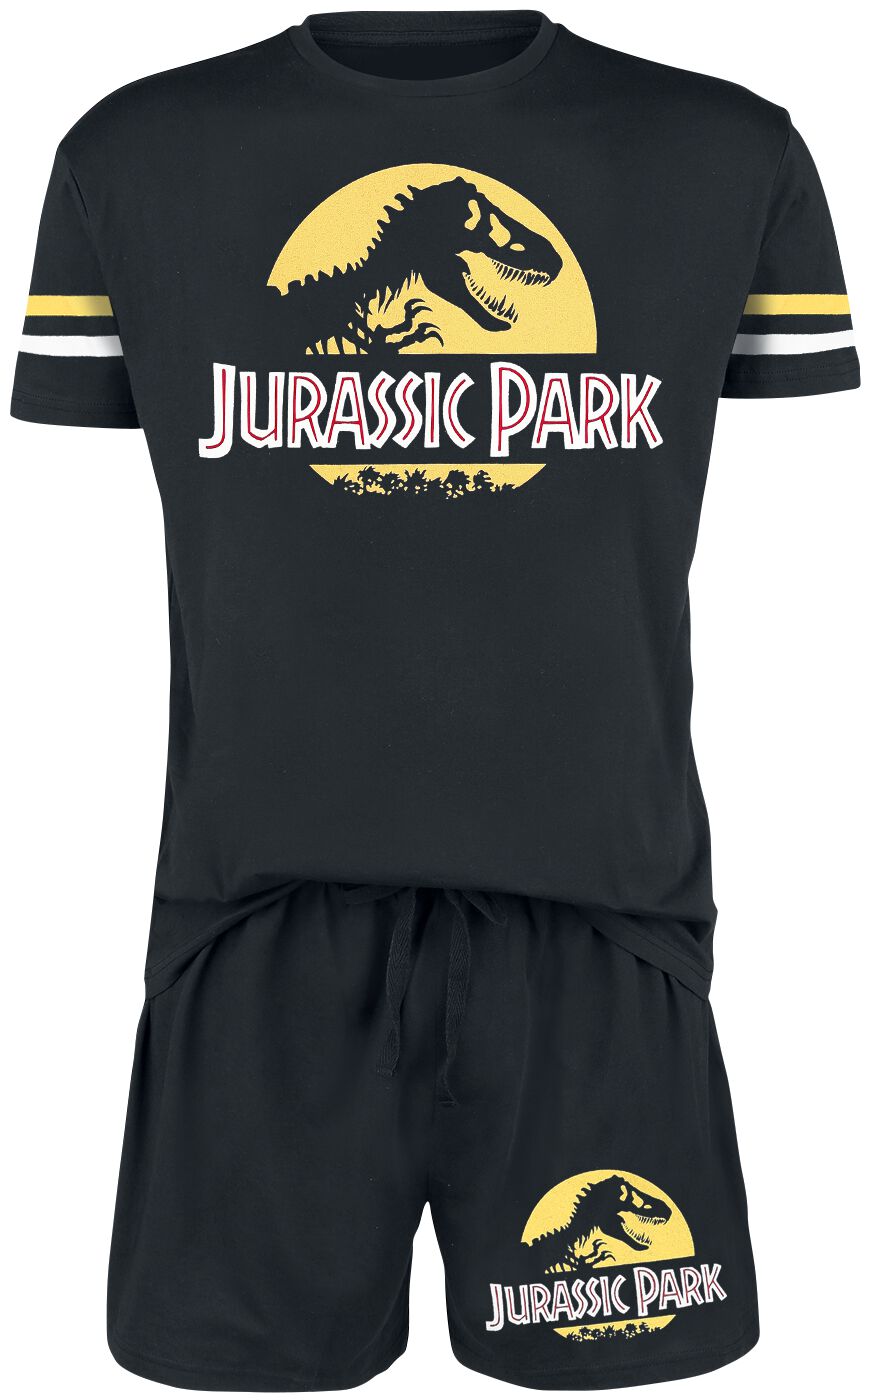 Jurassic Park Schlafanzug - Logo - S bis 3XL - für Männer - Größe 3XL - schwarz  - EMP exklusives Merchandise! von Jurassic Park